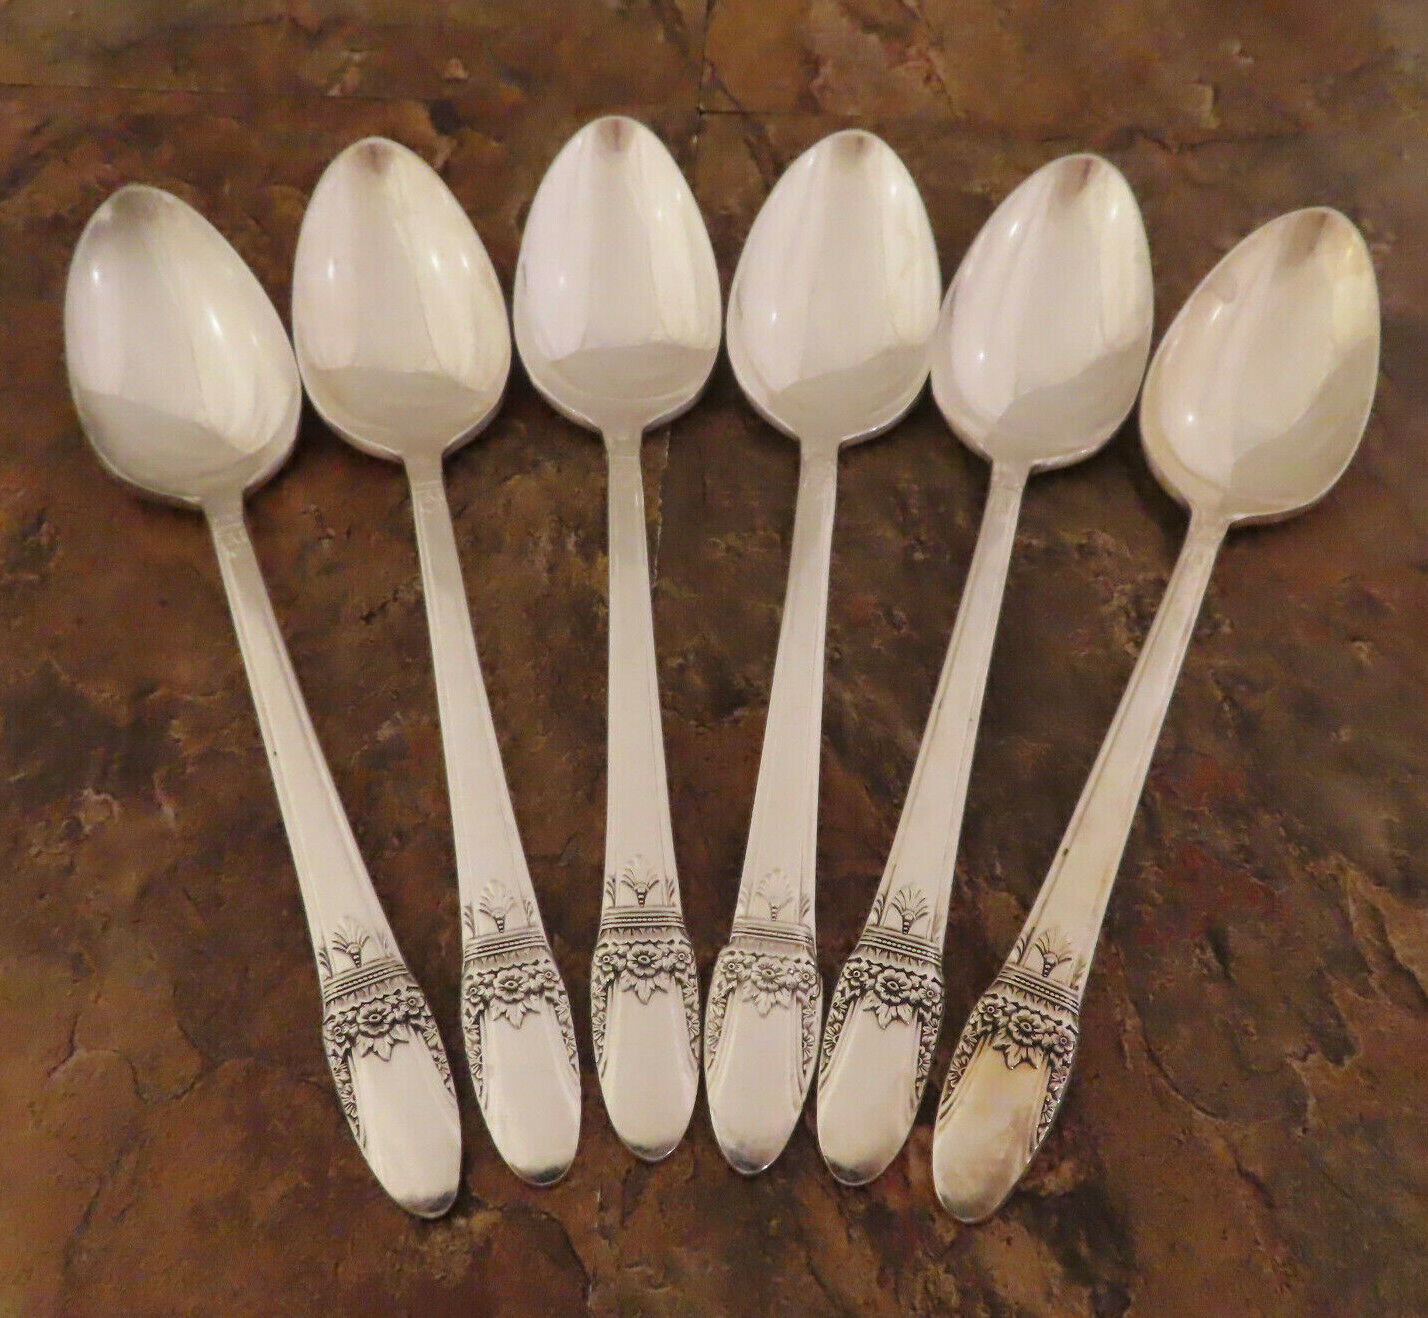 IS First Love 6 Teaspoons Spoons 1847 Rogers Vintage Silverplate Flatware Lot N